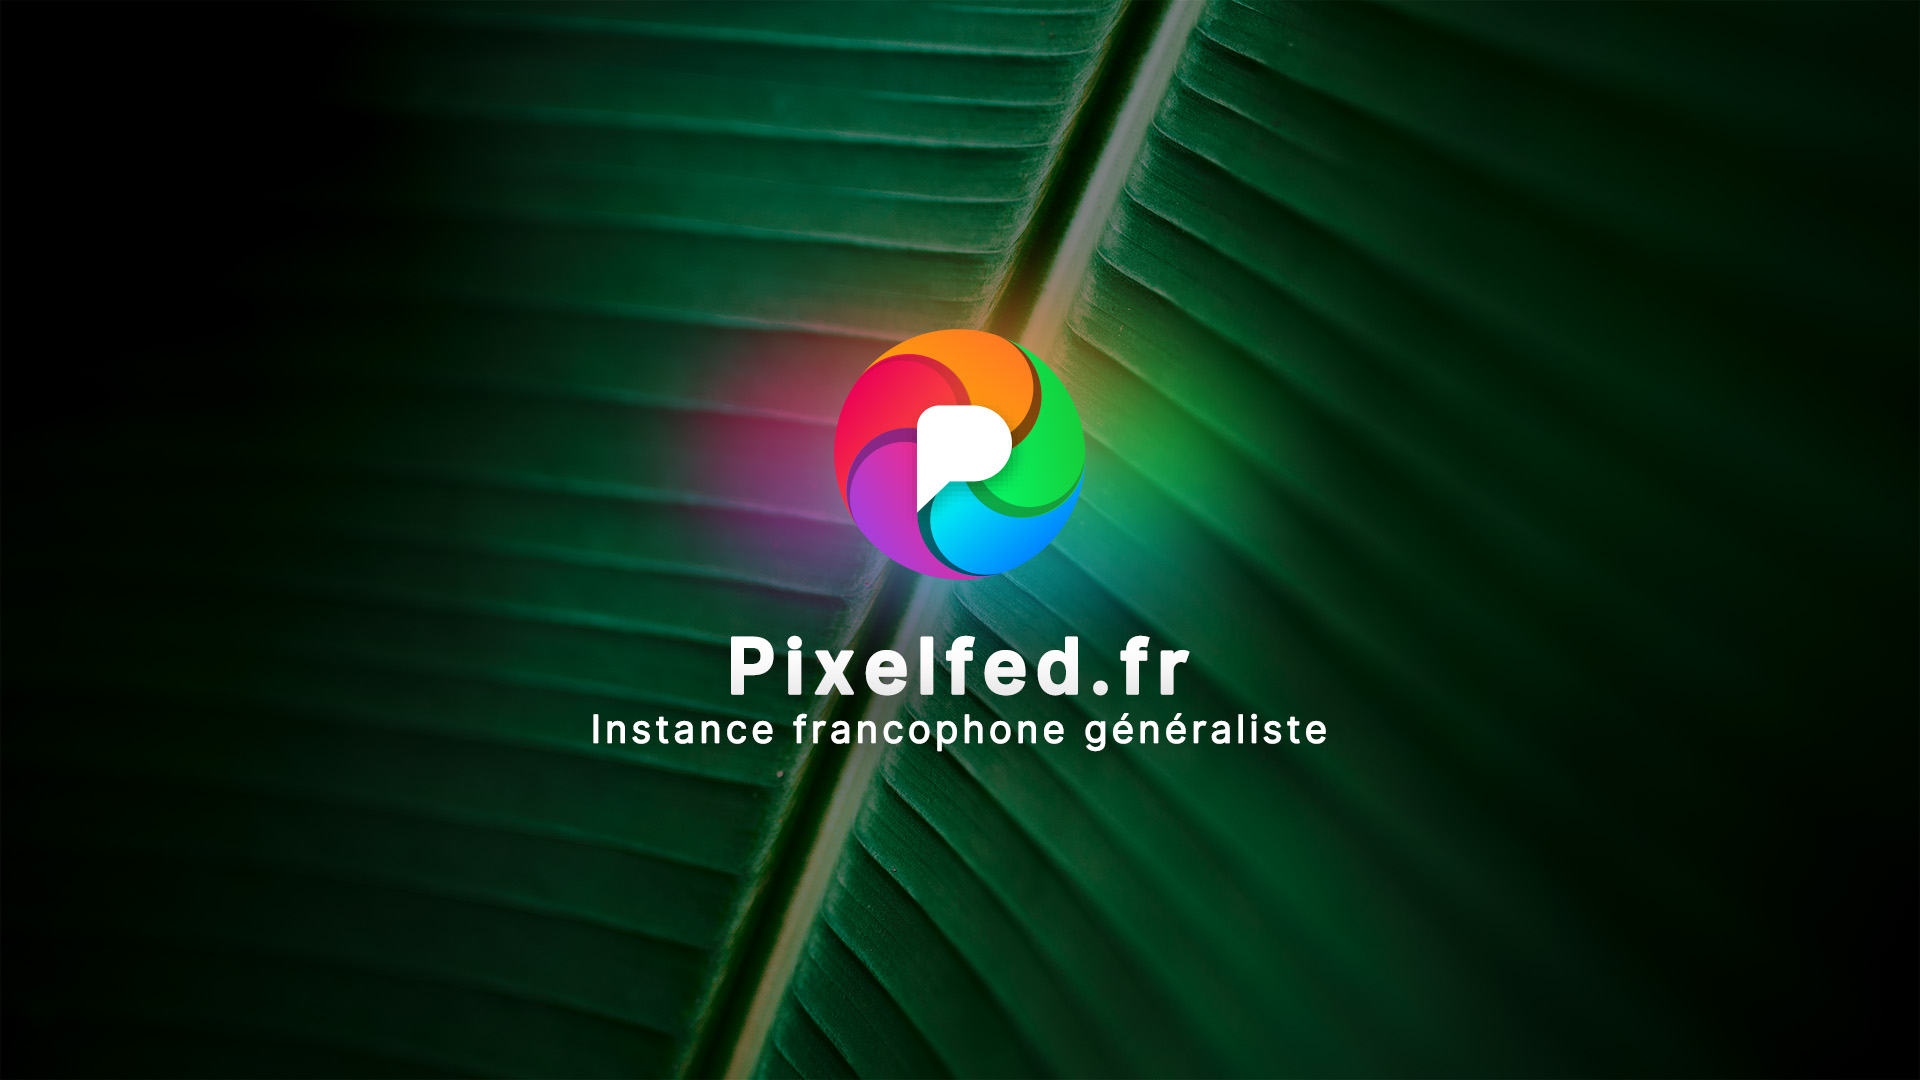 Pixelfed.fr est une plateforme de partage d'images et de vidéos généraliste. Activement modérée.